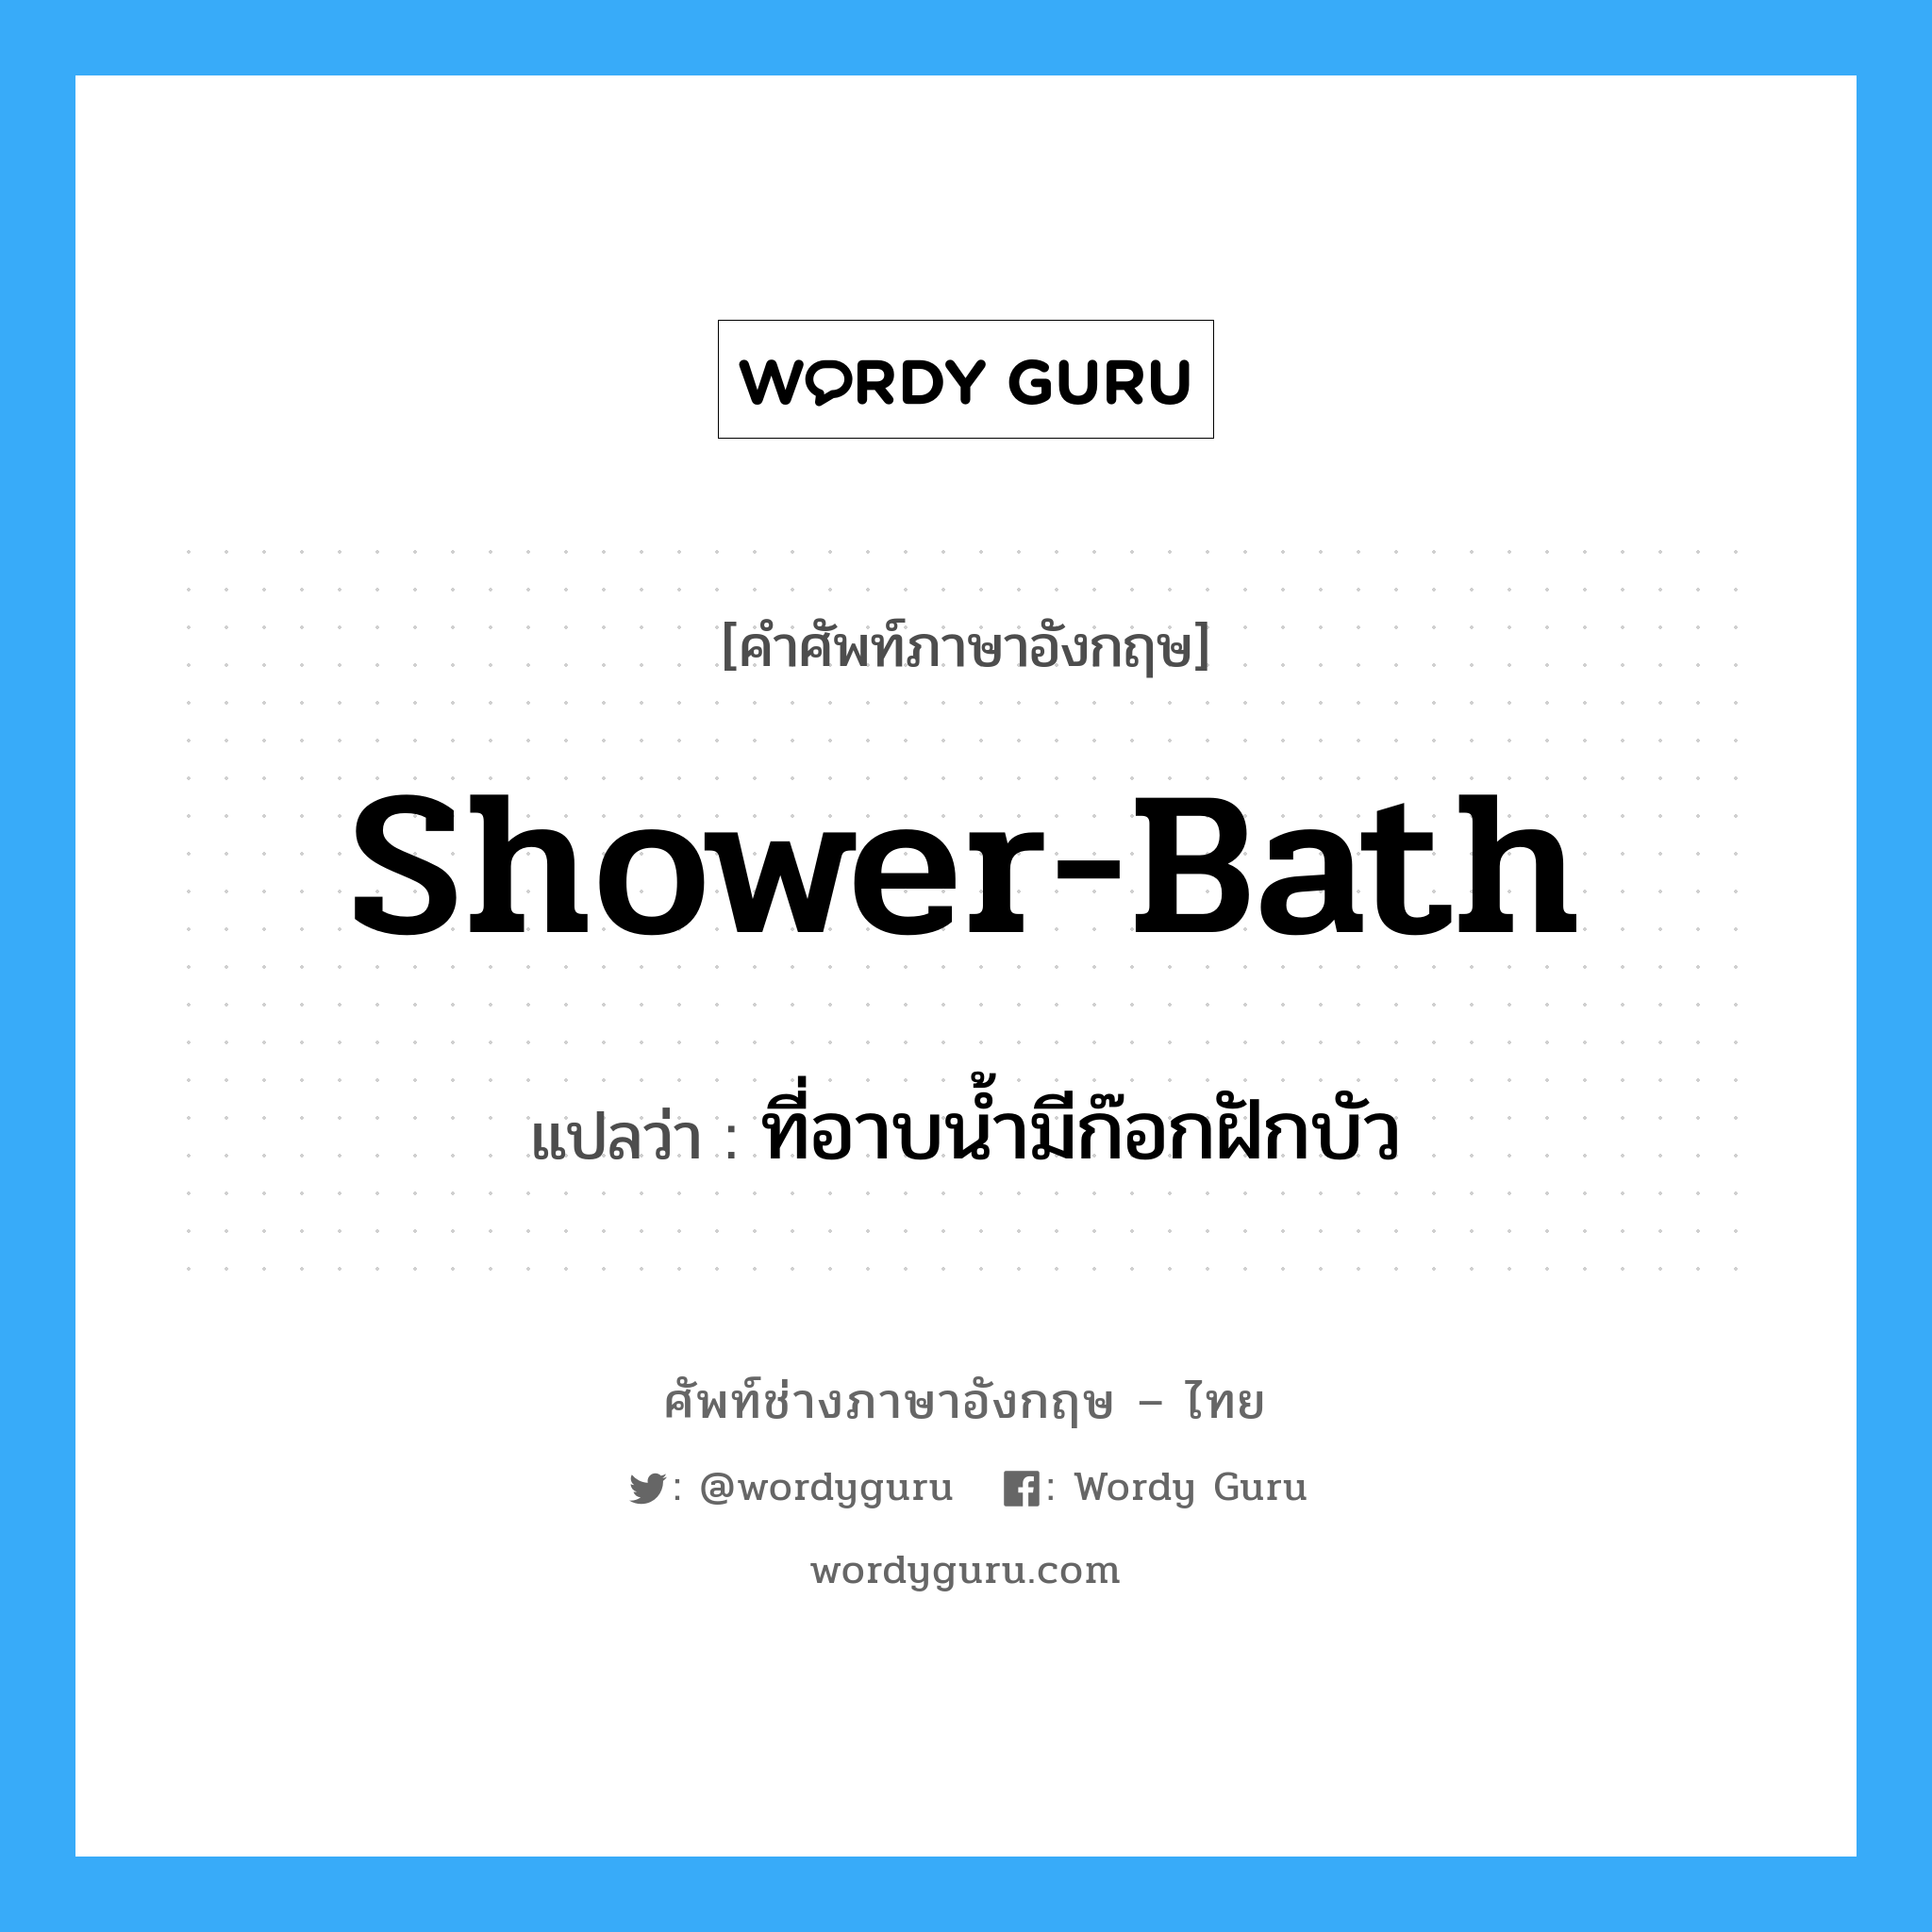 shower-bath แปลว่า?, คำศัพท์ช่างภาษาอังกฤษ - ไทย shower-bath คำศัพท์ภาษาอังกฤษ shower-bath แปลว่า ที่อาบน้ำมีก๊อกฝักบัว